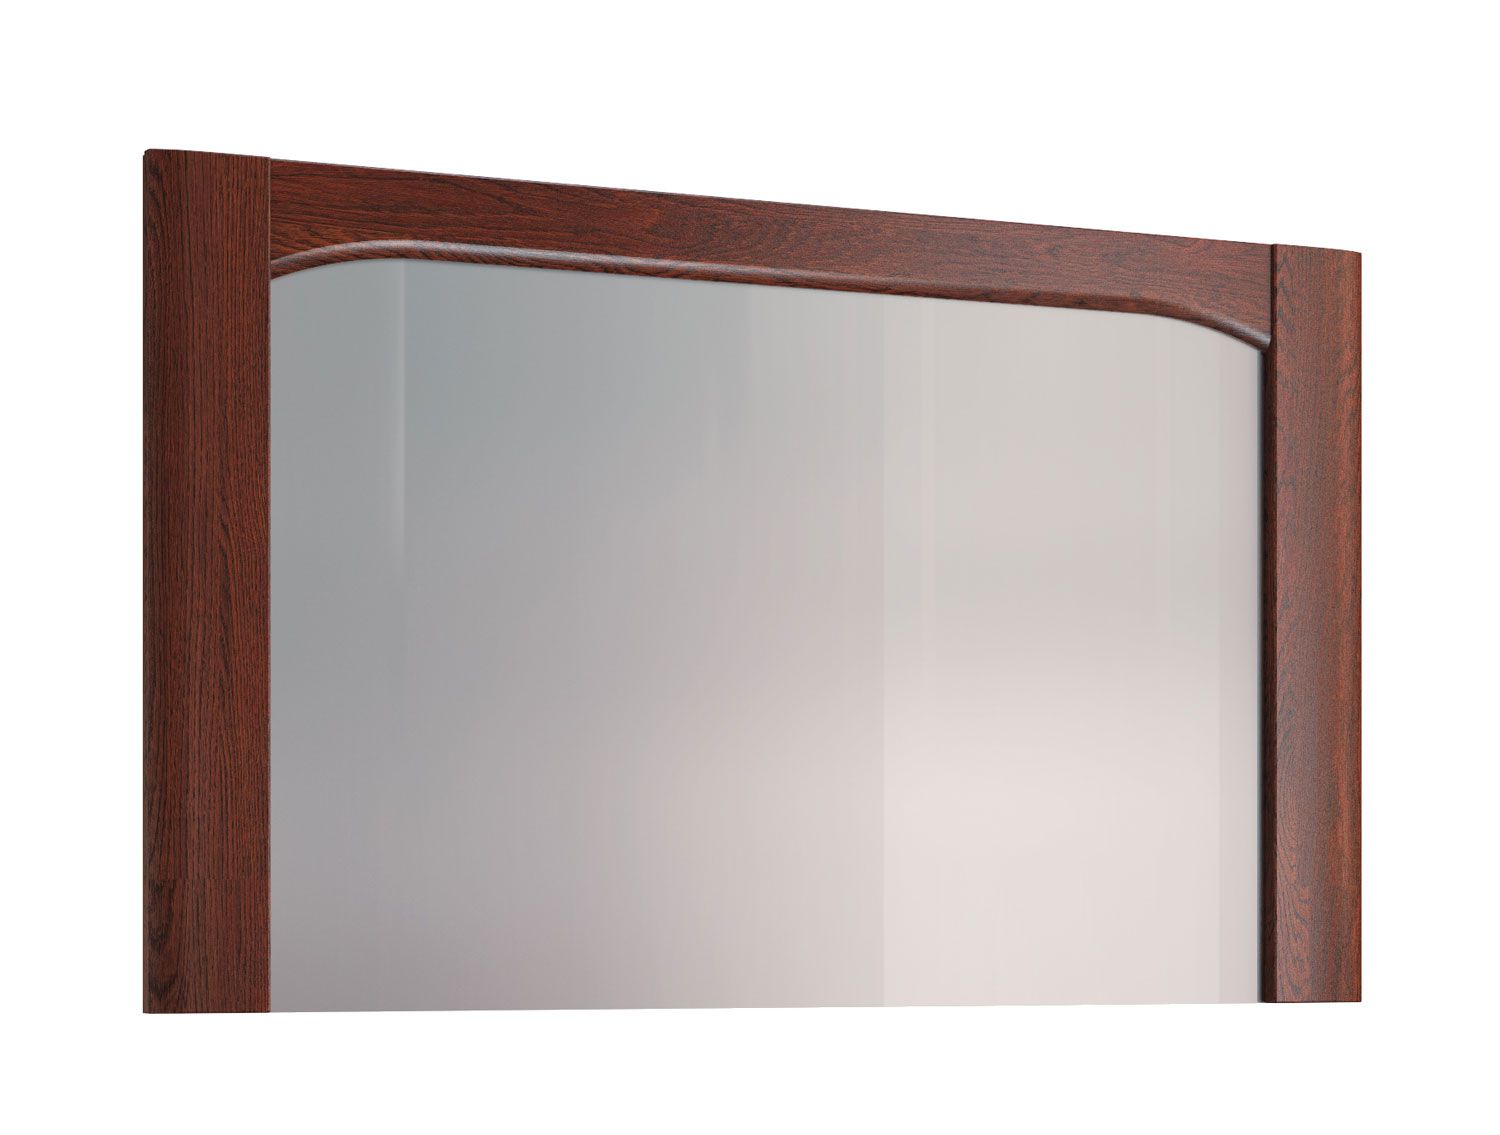 Miroir simple avec cadre en bois Krasno 35, chêne massif, dimensions : 70 x 115 x 4 cm, parfait pour la coiffeuse